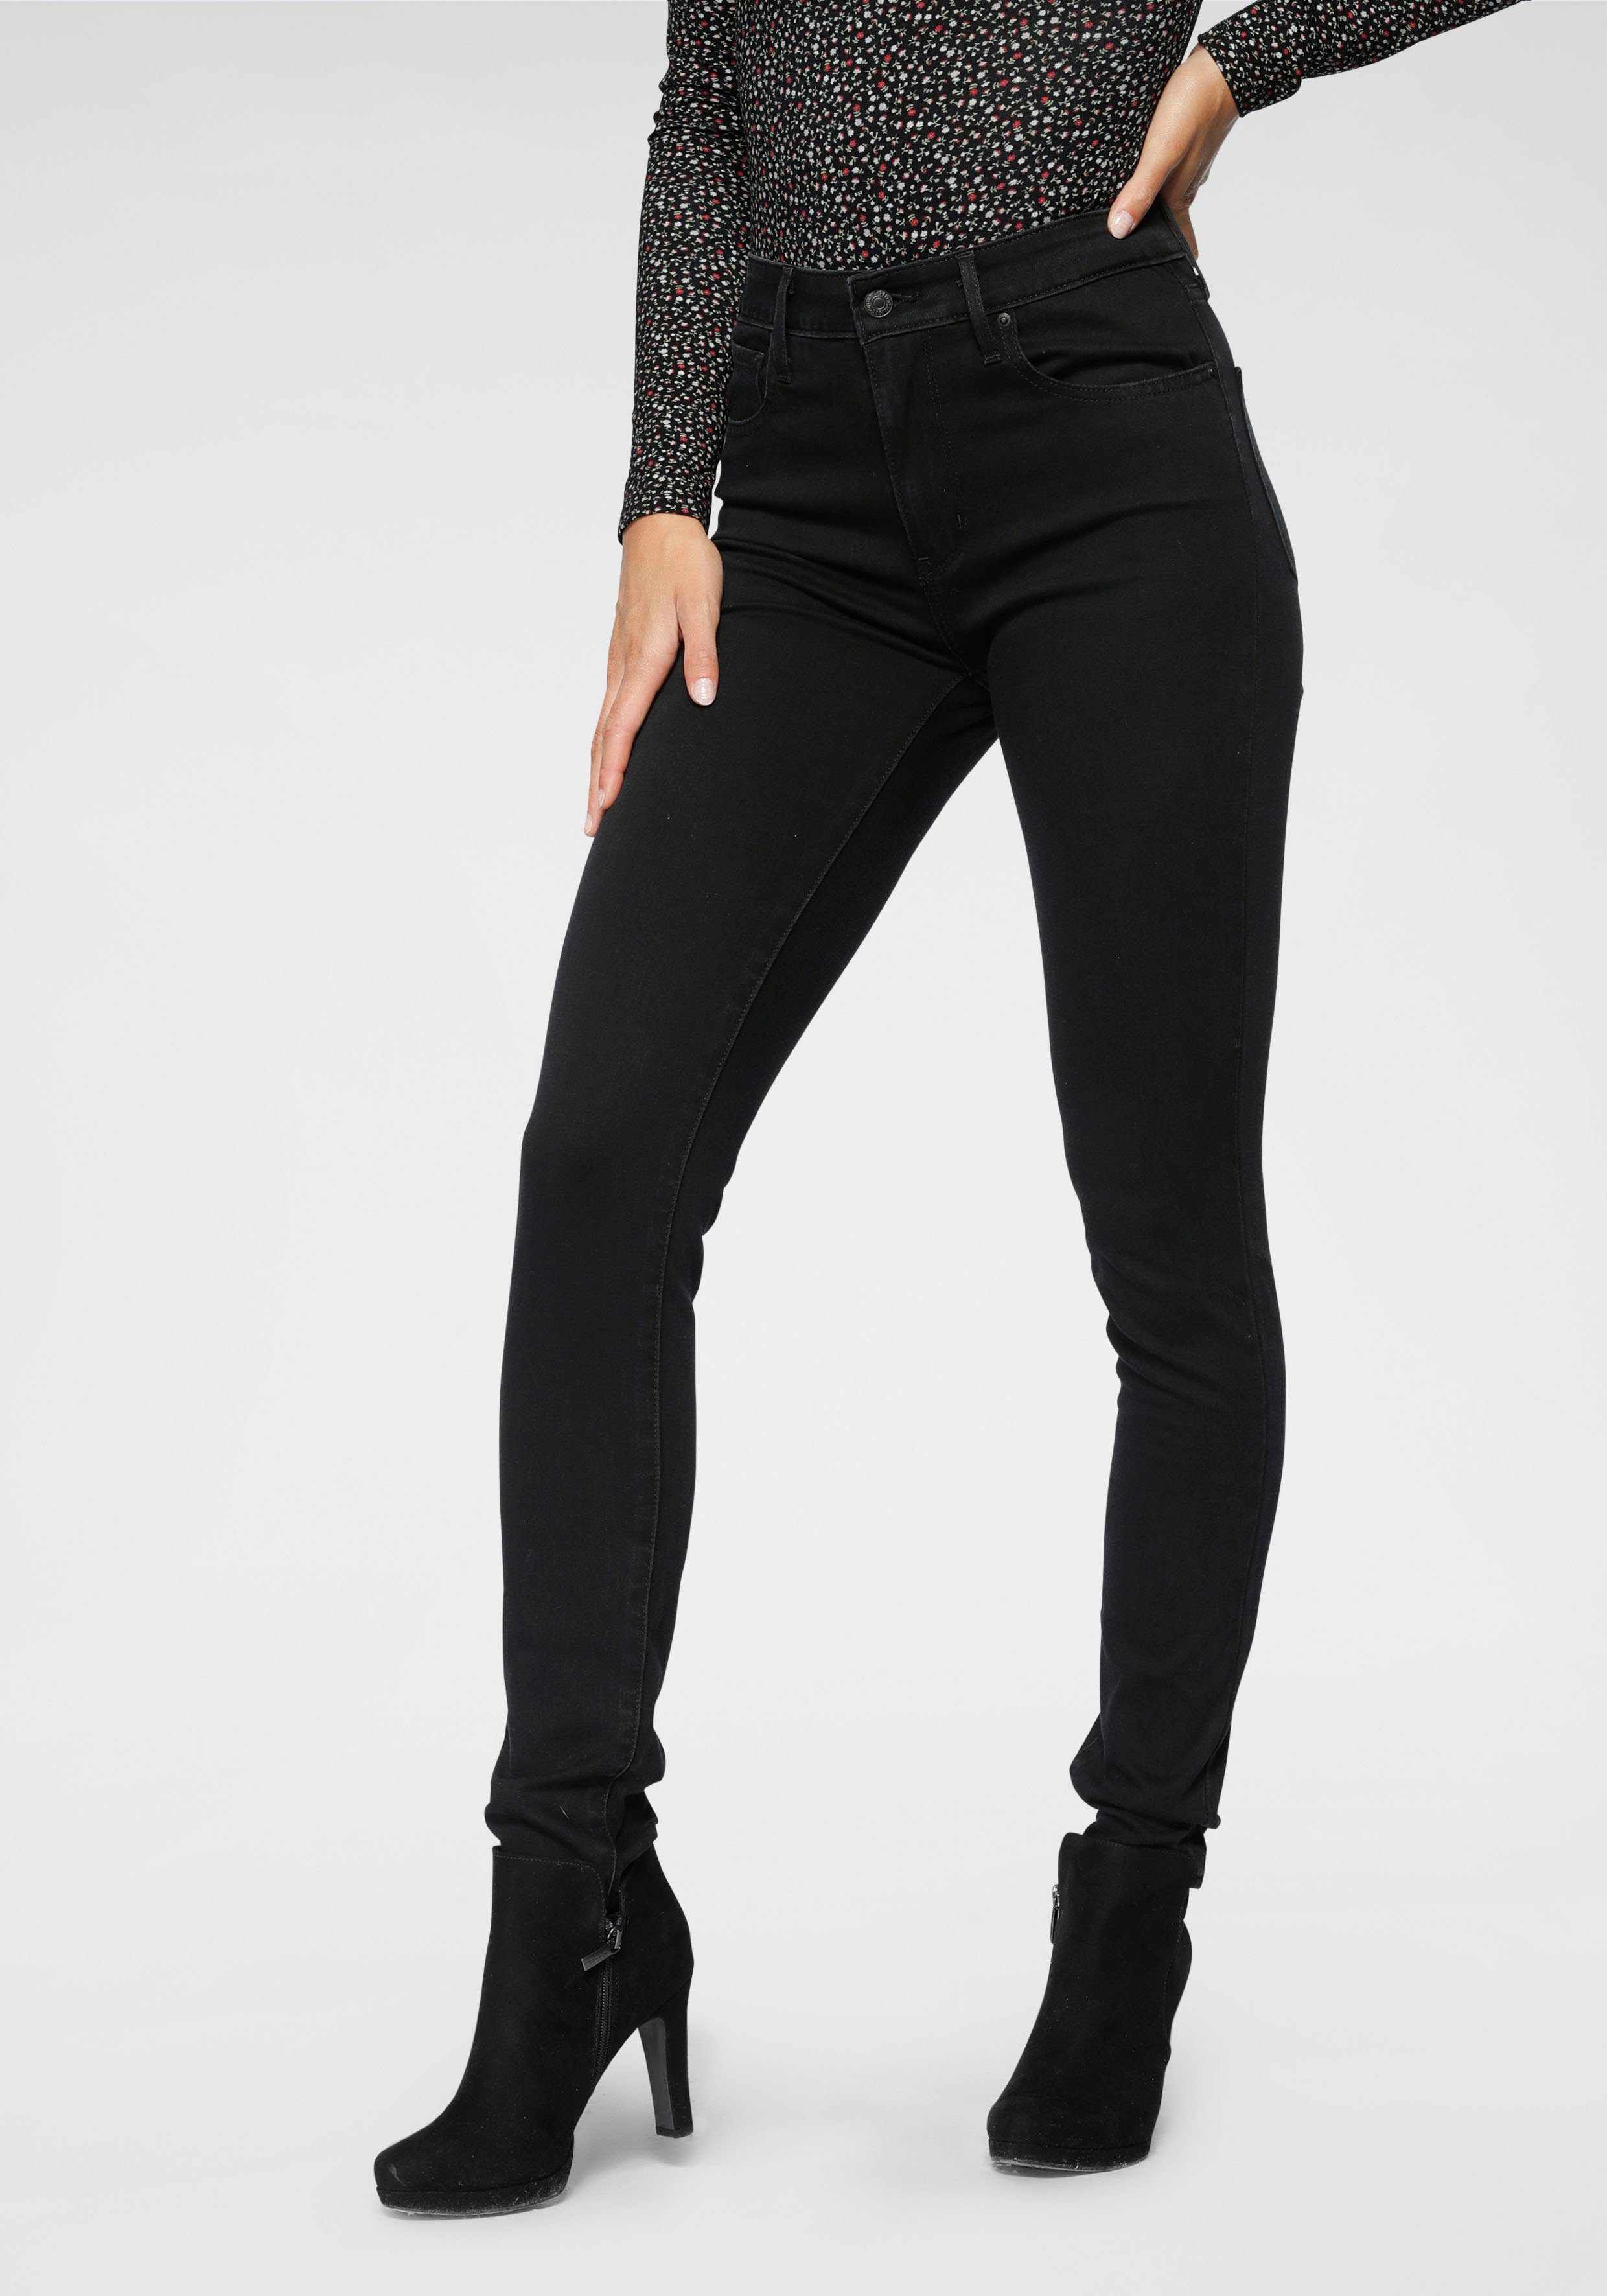 Schwarze High Waist Jeans für Damen online kaufen | OTTO